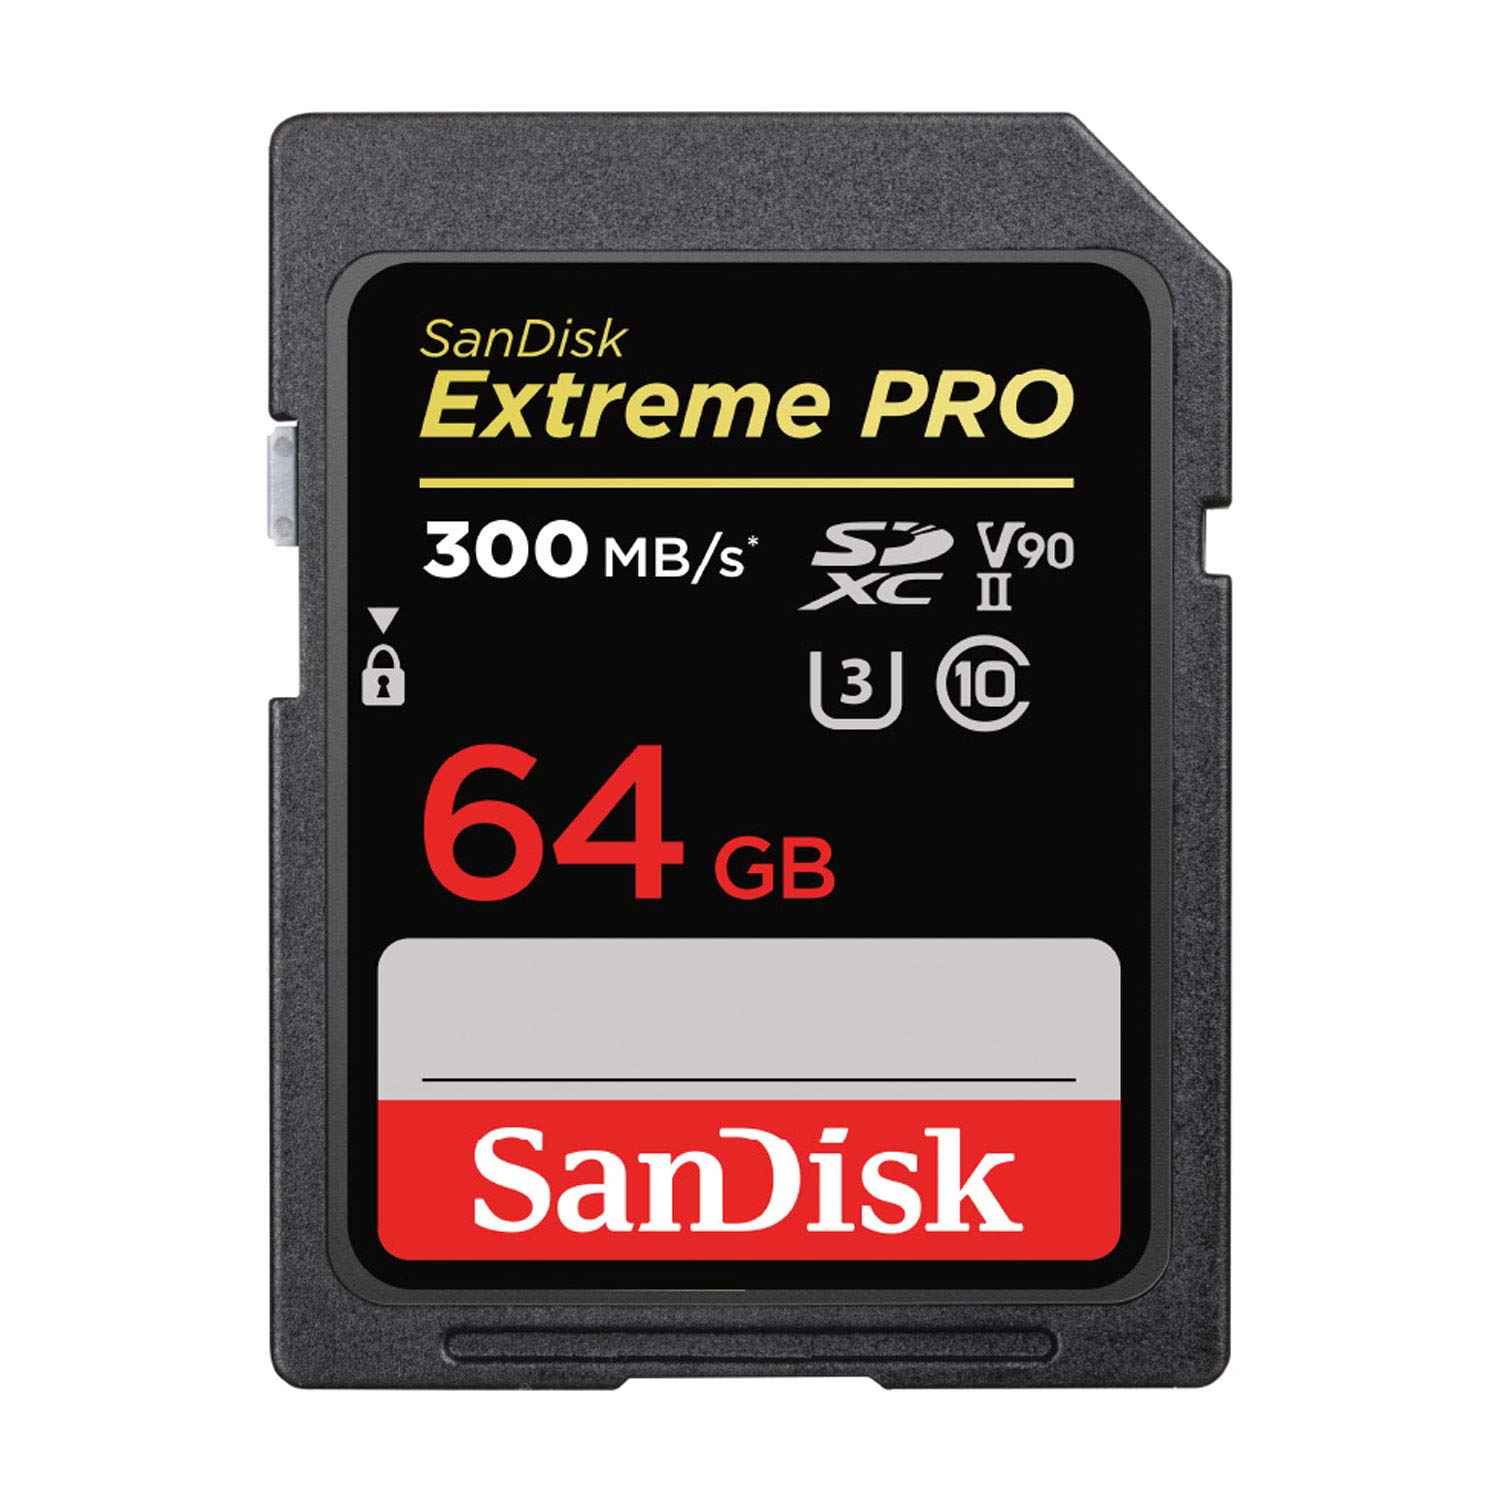 サンディスク 正規品 SDカード 64GB SDXC Class10 UHS-II V90 読取最大300MB/s SanDisk Extreme PRO SDSDXDK-064G-GHJIN 新パッケージ